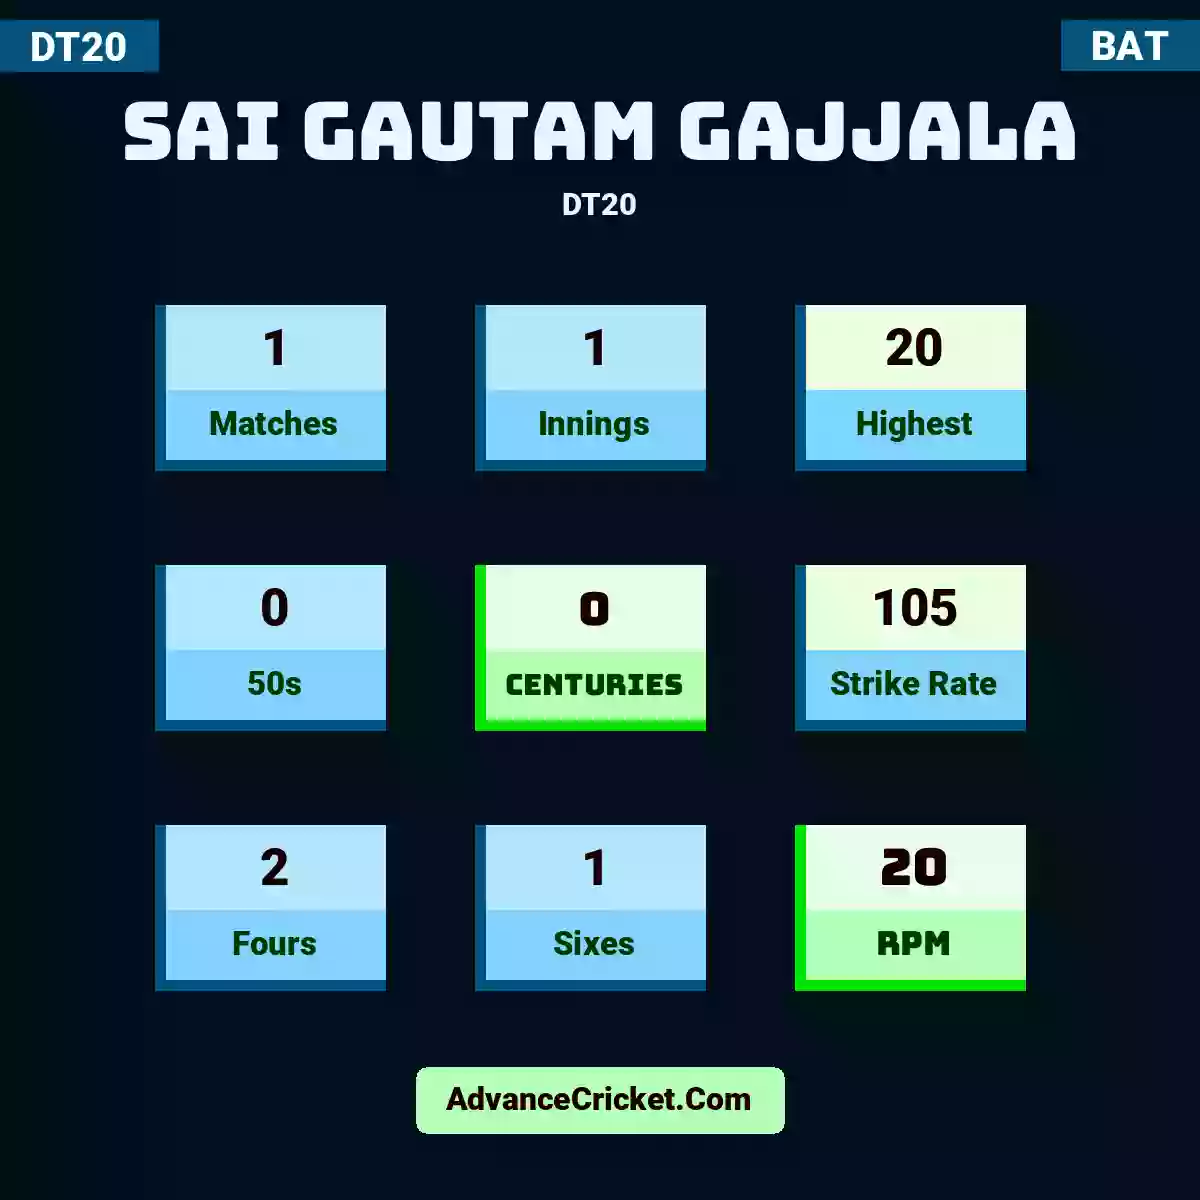 Sai Gautam Gajjala DT20 , Sai Gautam Gajjala played 1 matches, scored 20 runs as highest, 0 half-centuries, and 0 centuries, with a strike rate of 105. S.Gautam.Gajjala hit 2 fours and 1 sixes, with an RPM of 20.